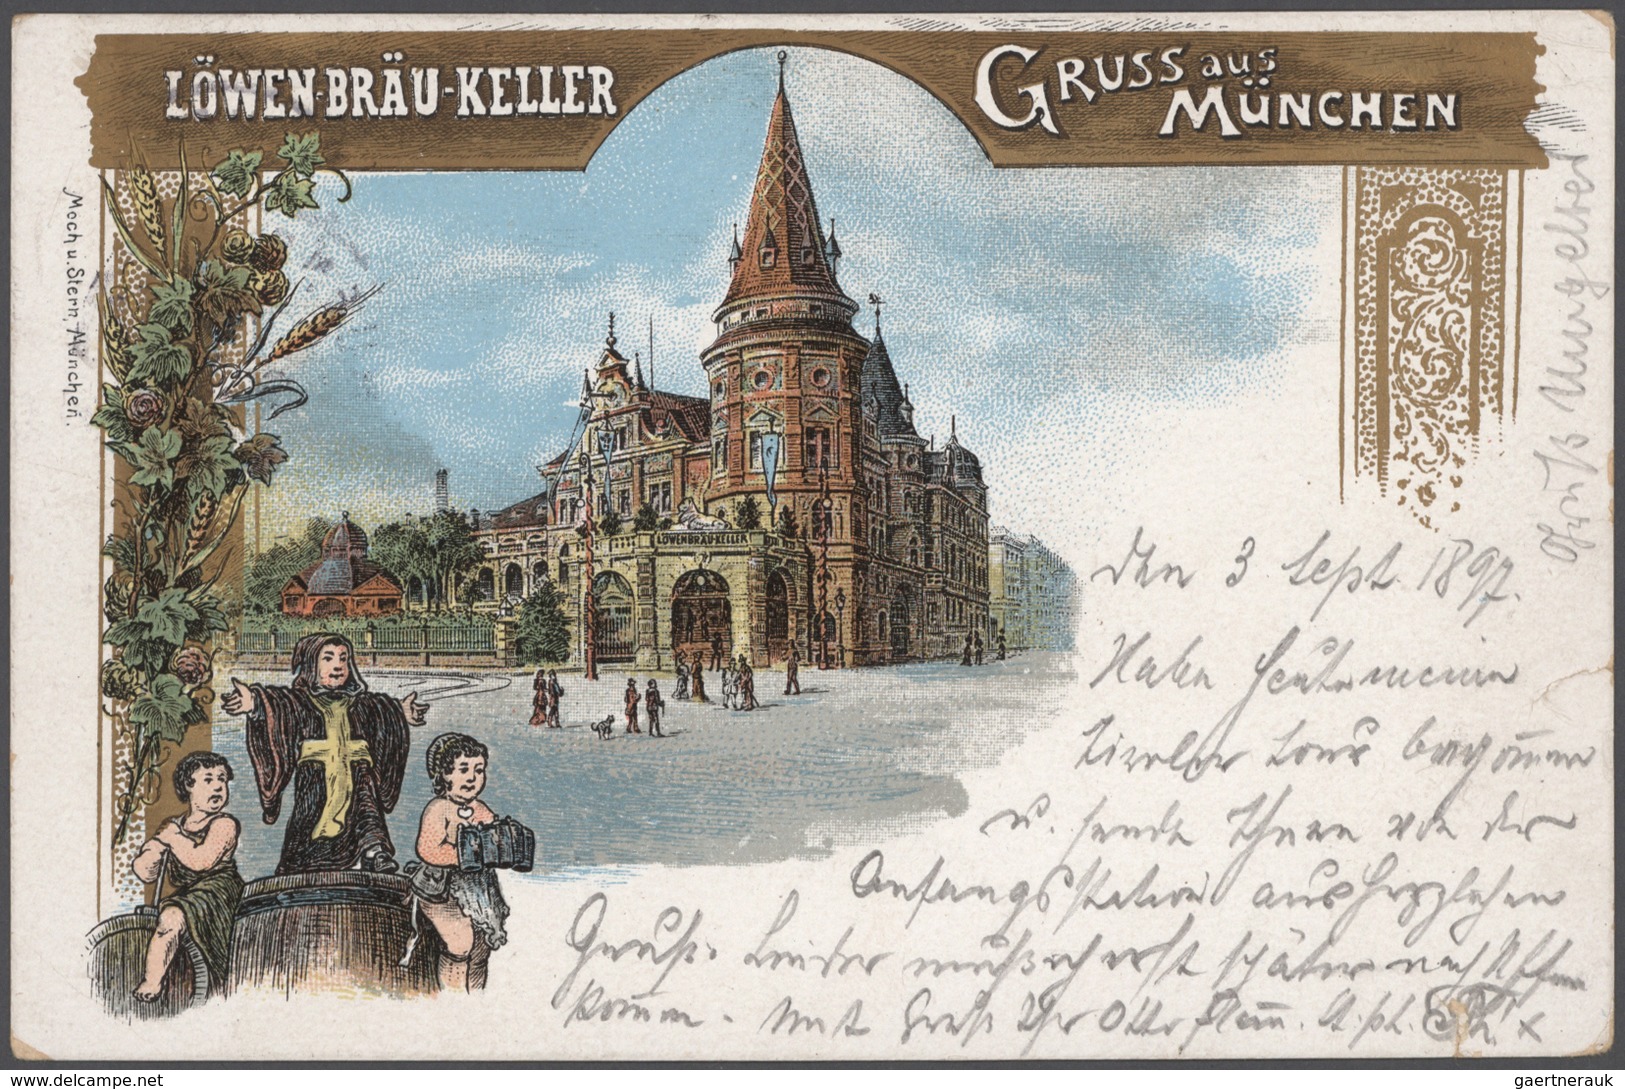 Ansichtskarten: Deutschland: 1895/1940, (ca.), sehenswerter AK-Posten mit 480 Karten, Schwerpunkt Wü